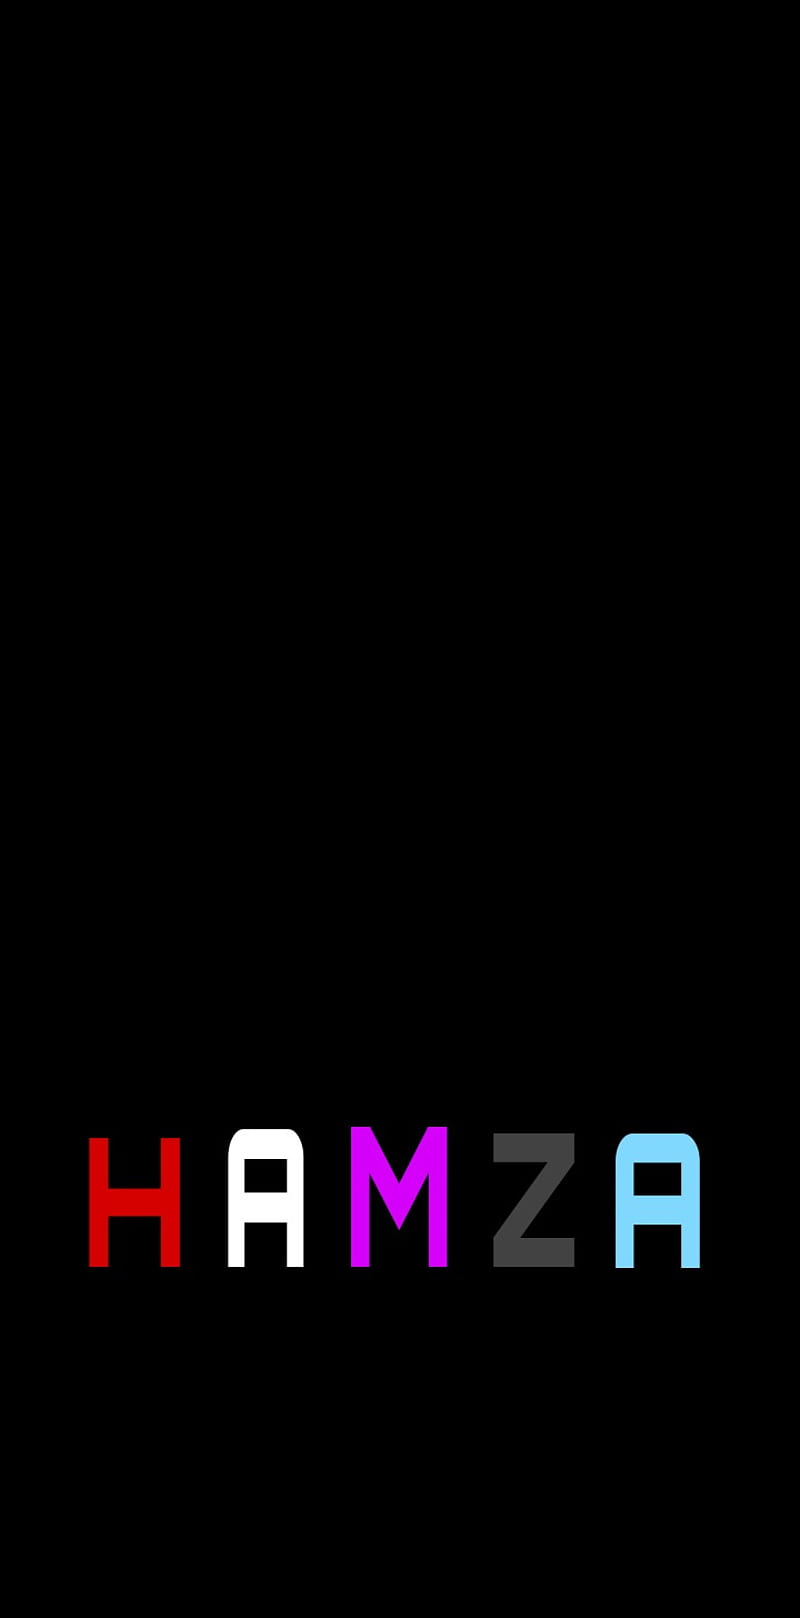 Hamza Ishrat - Top 10 Gaming (4K) Wallpaper for pc